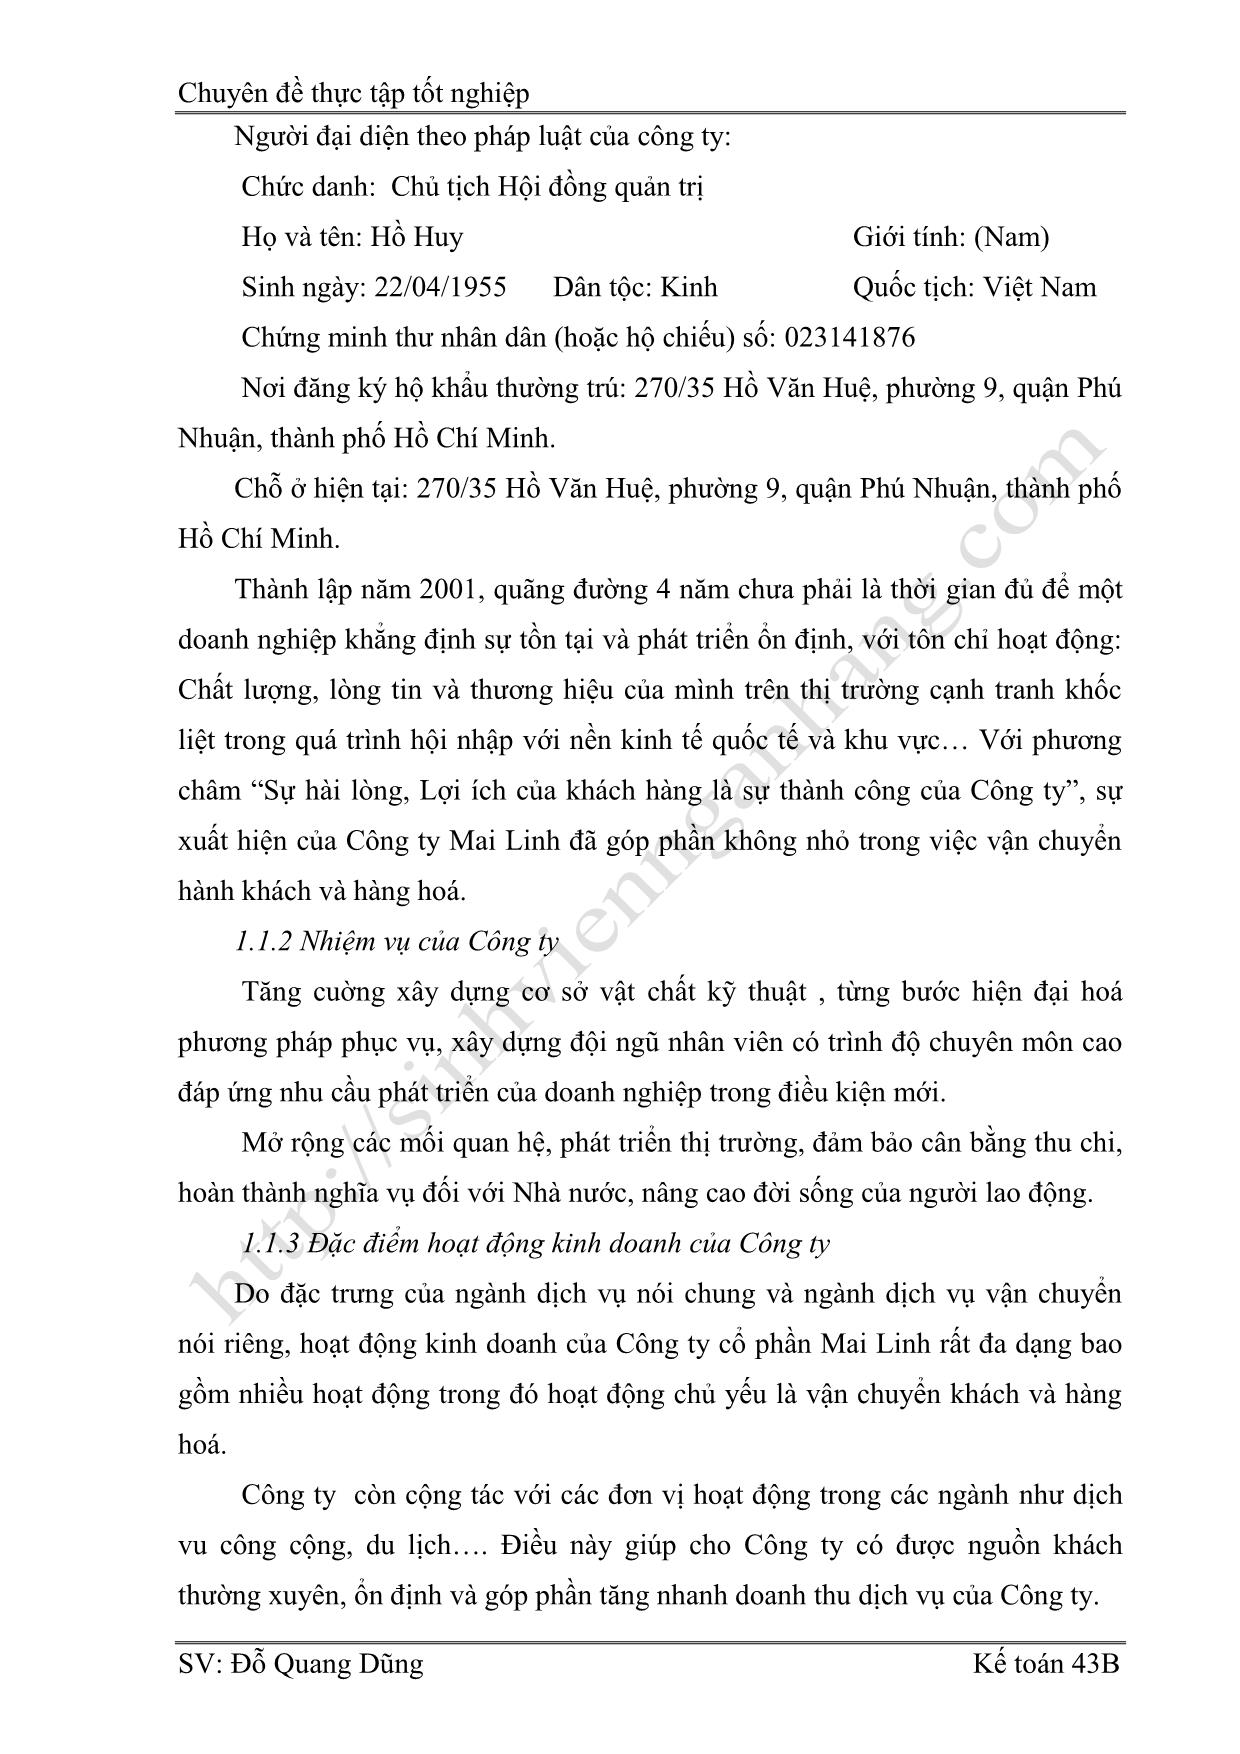 Chuyên đề Hoàn thiện hạch toán doanh thu, xác định kết quả kinh doanh tại công ty cổ phần Mai Linh - Hà Nội trang 3